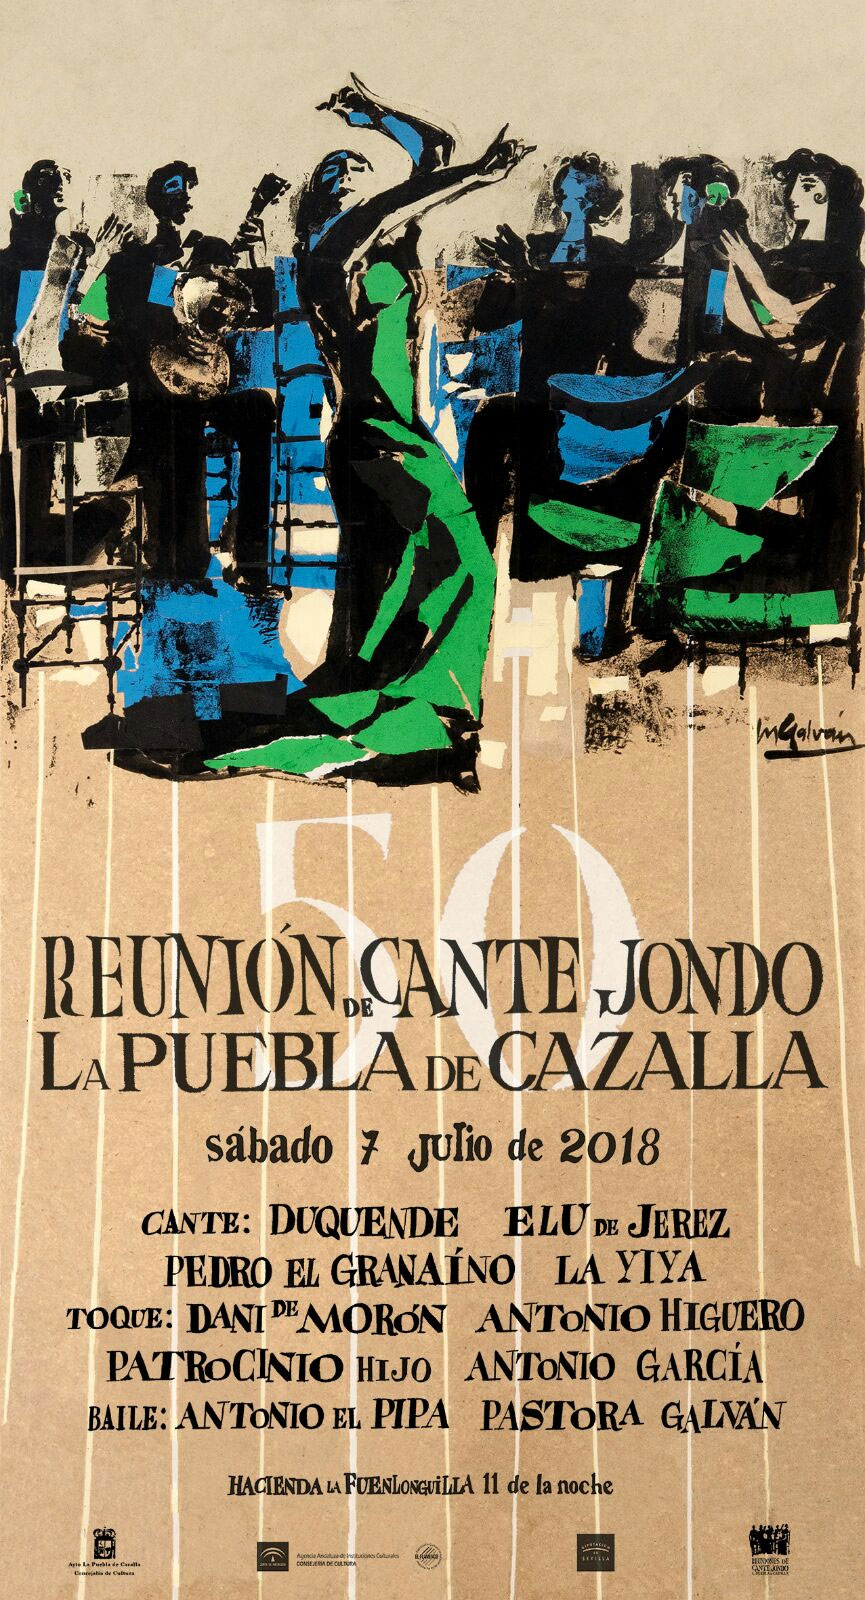 ReuniÃ³n Cante Jondo 2018 - La Puebla de Cazalla